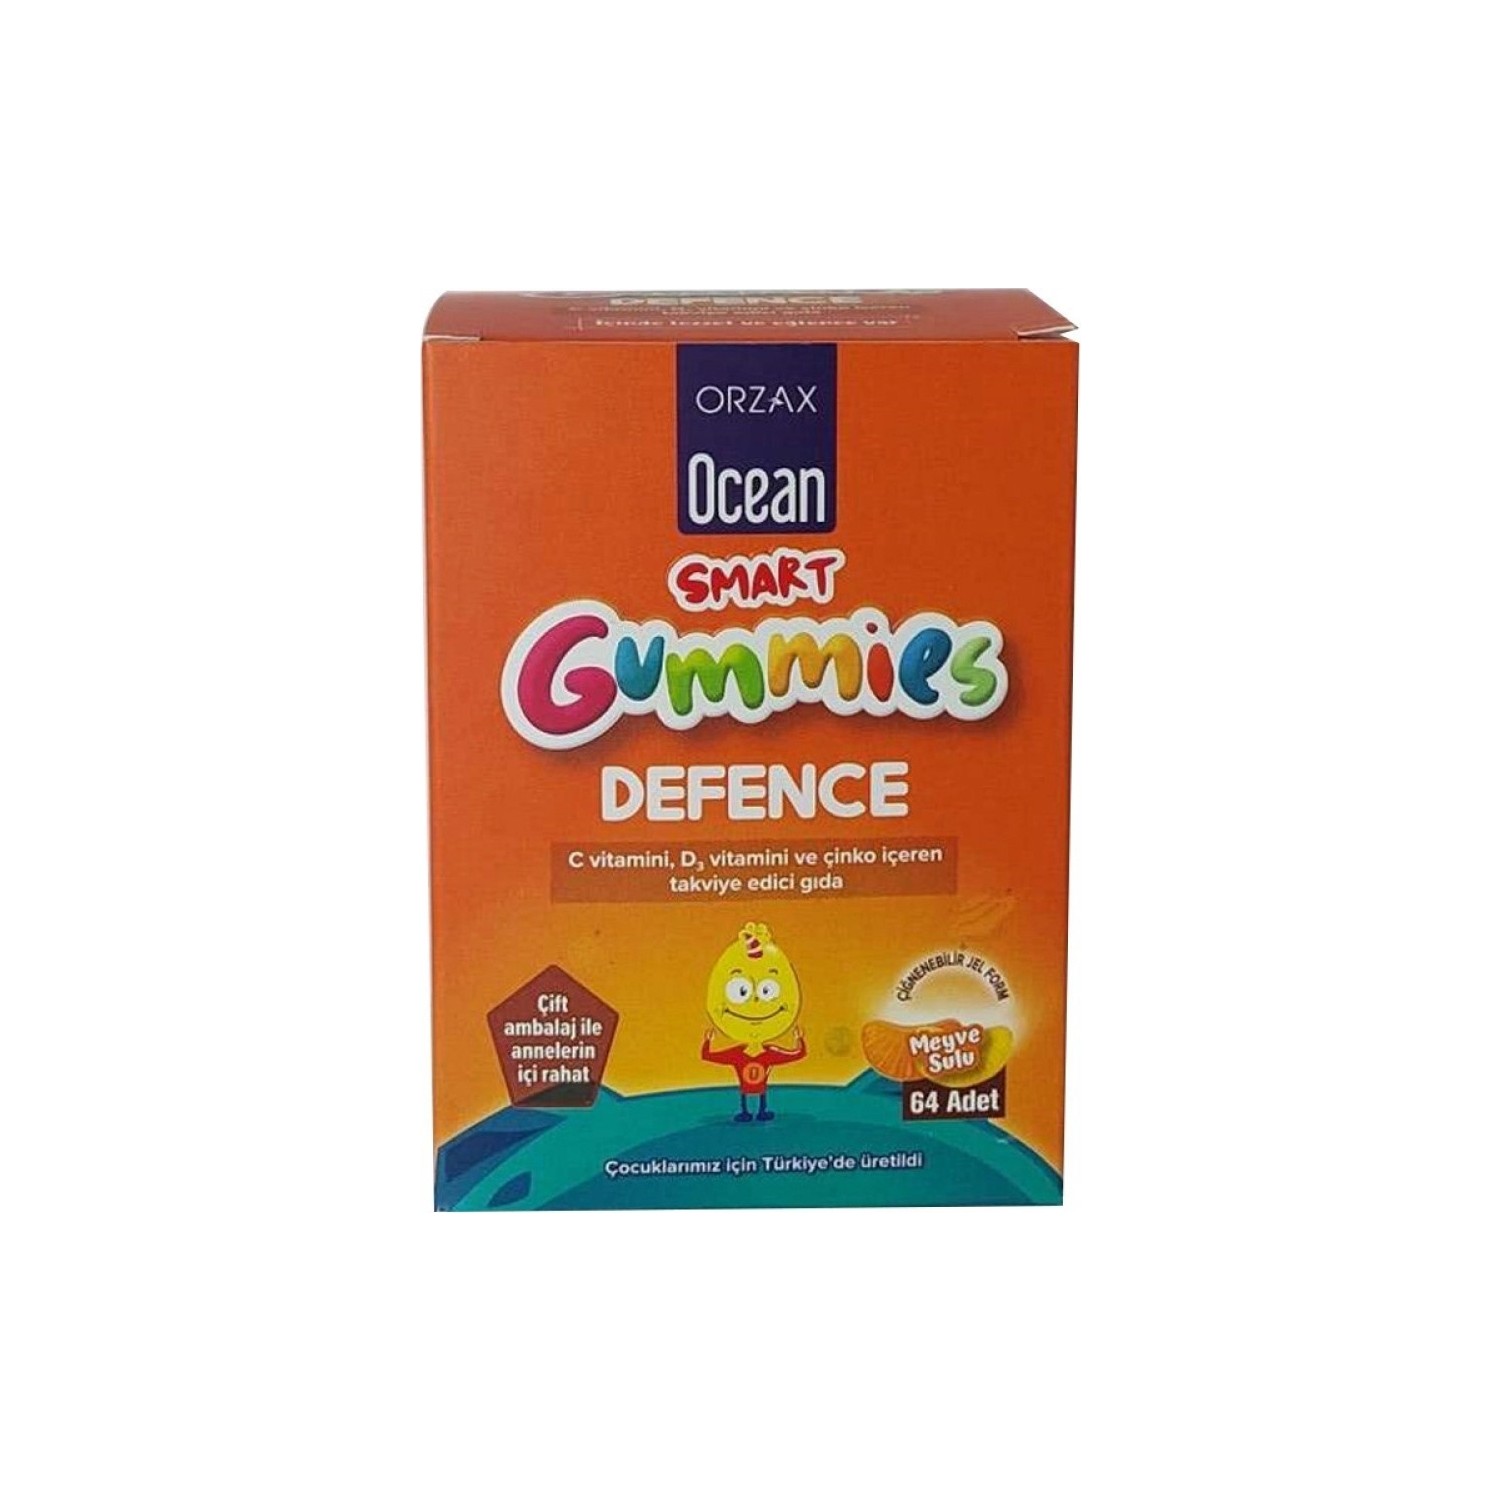 Мультивитаминный гель Orzax Ocean Smart Gummies Defense, 64 таблетки пищевая добавка rejuvicare biotin gummies raspberry 60 жевательных таблеток